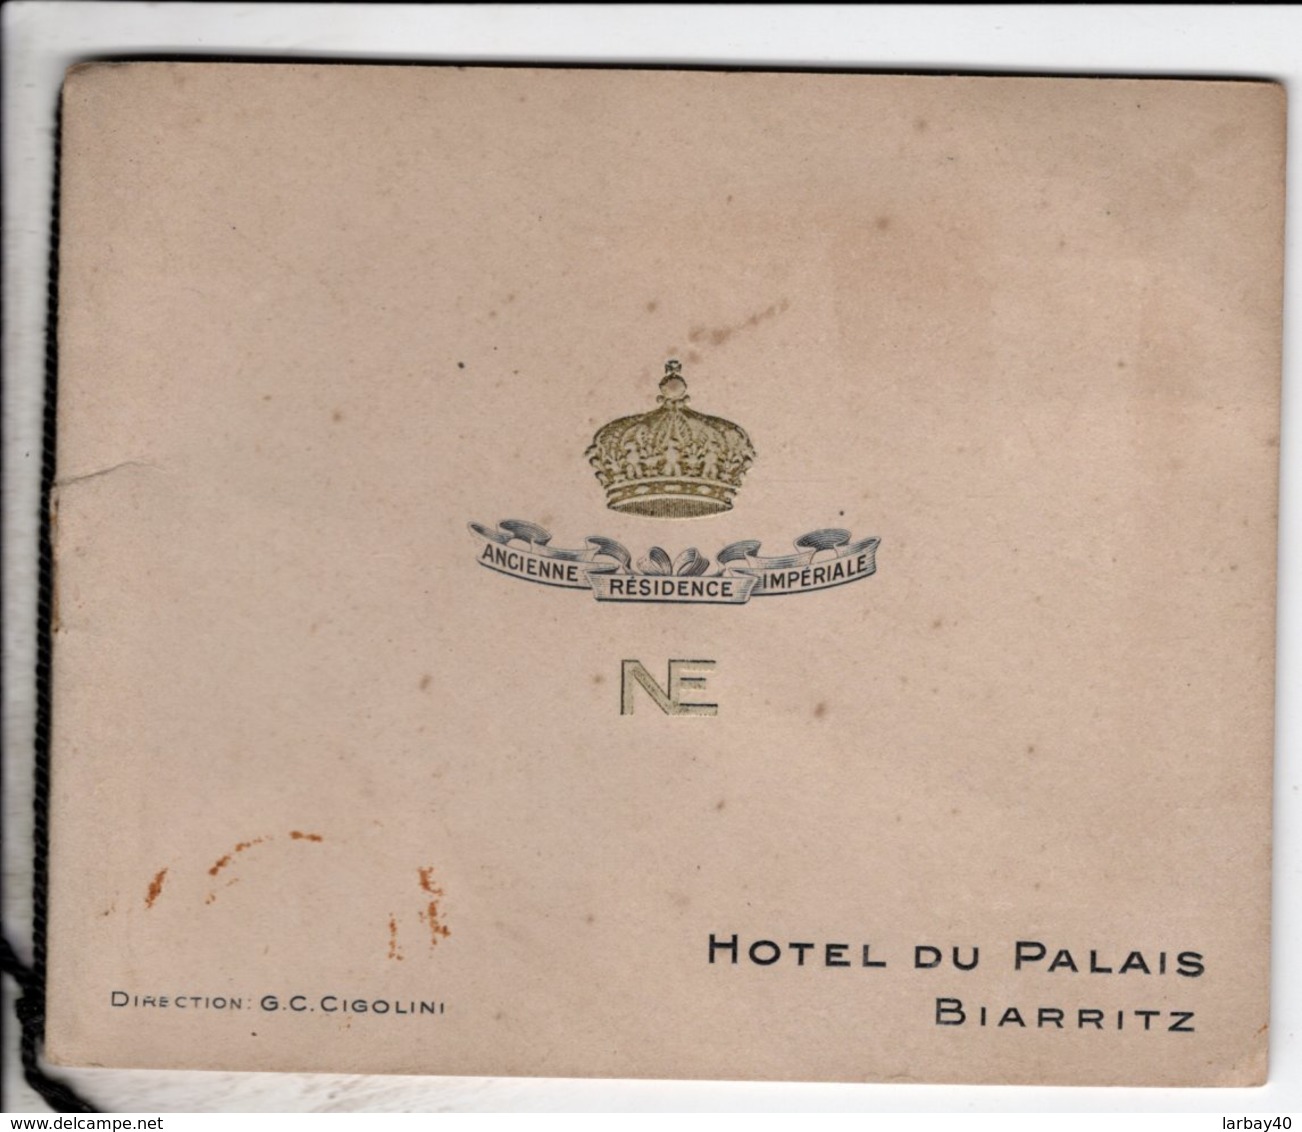 Biarritz Hotel Du Palais Direction Cigolini Ancienne Residence Imperiale Cliche Nadar Bourgeade Paris - Dépliants Touristiques